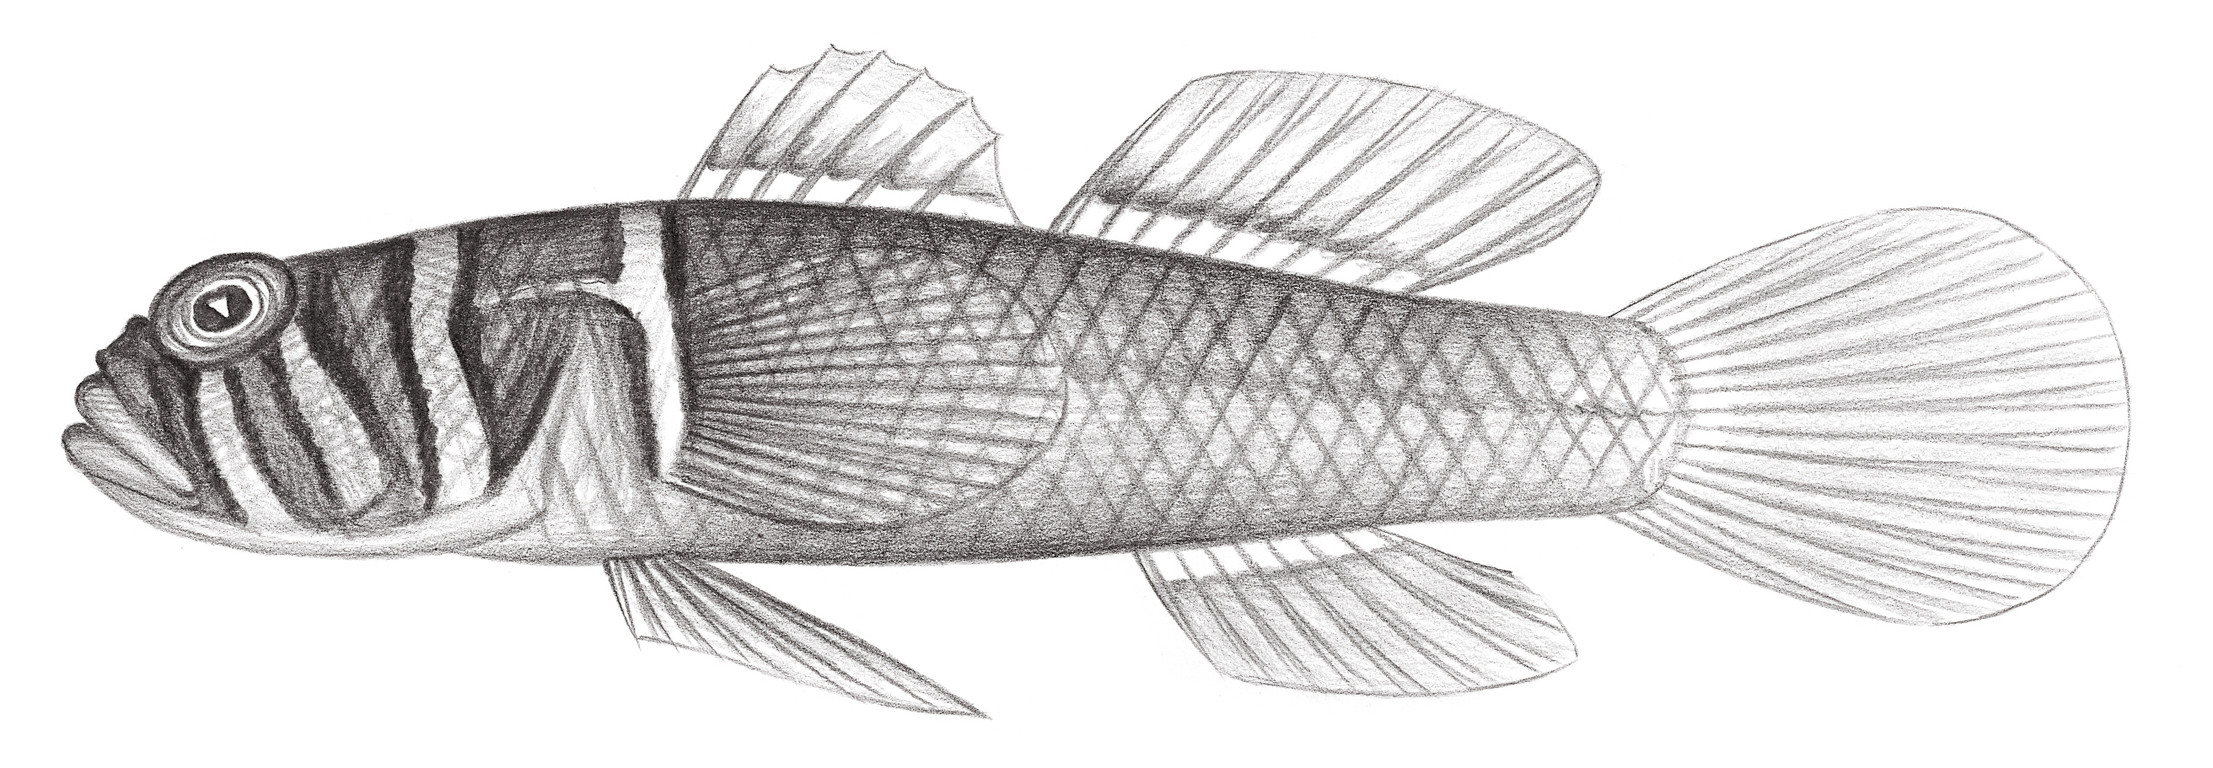 2184.	廣裸鋸鱗鰕虎 Priolepis boreus (Snyder, 1909)